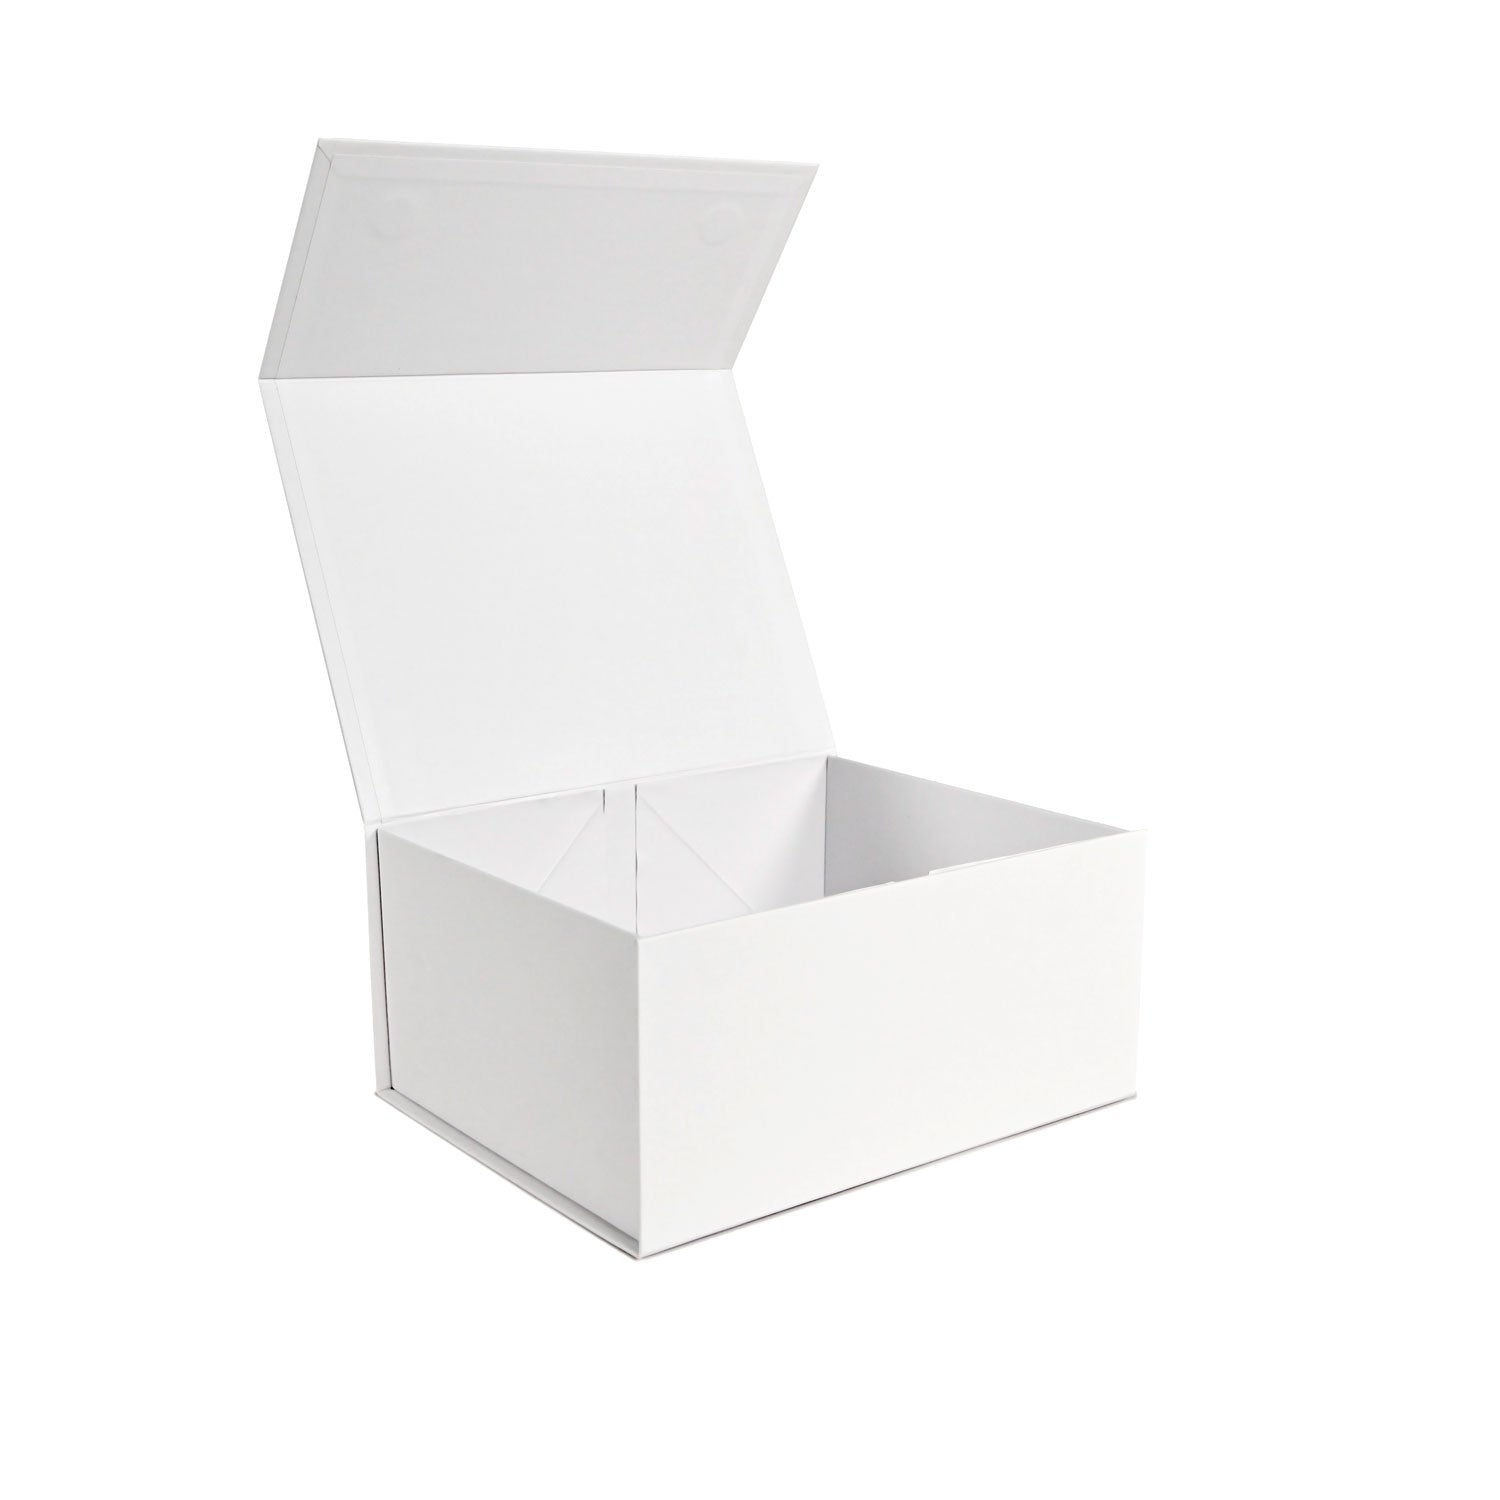 Empty White Medium Gift Box - NEON Packaging